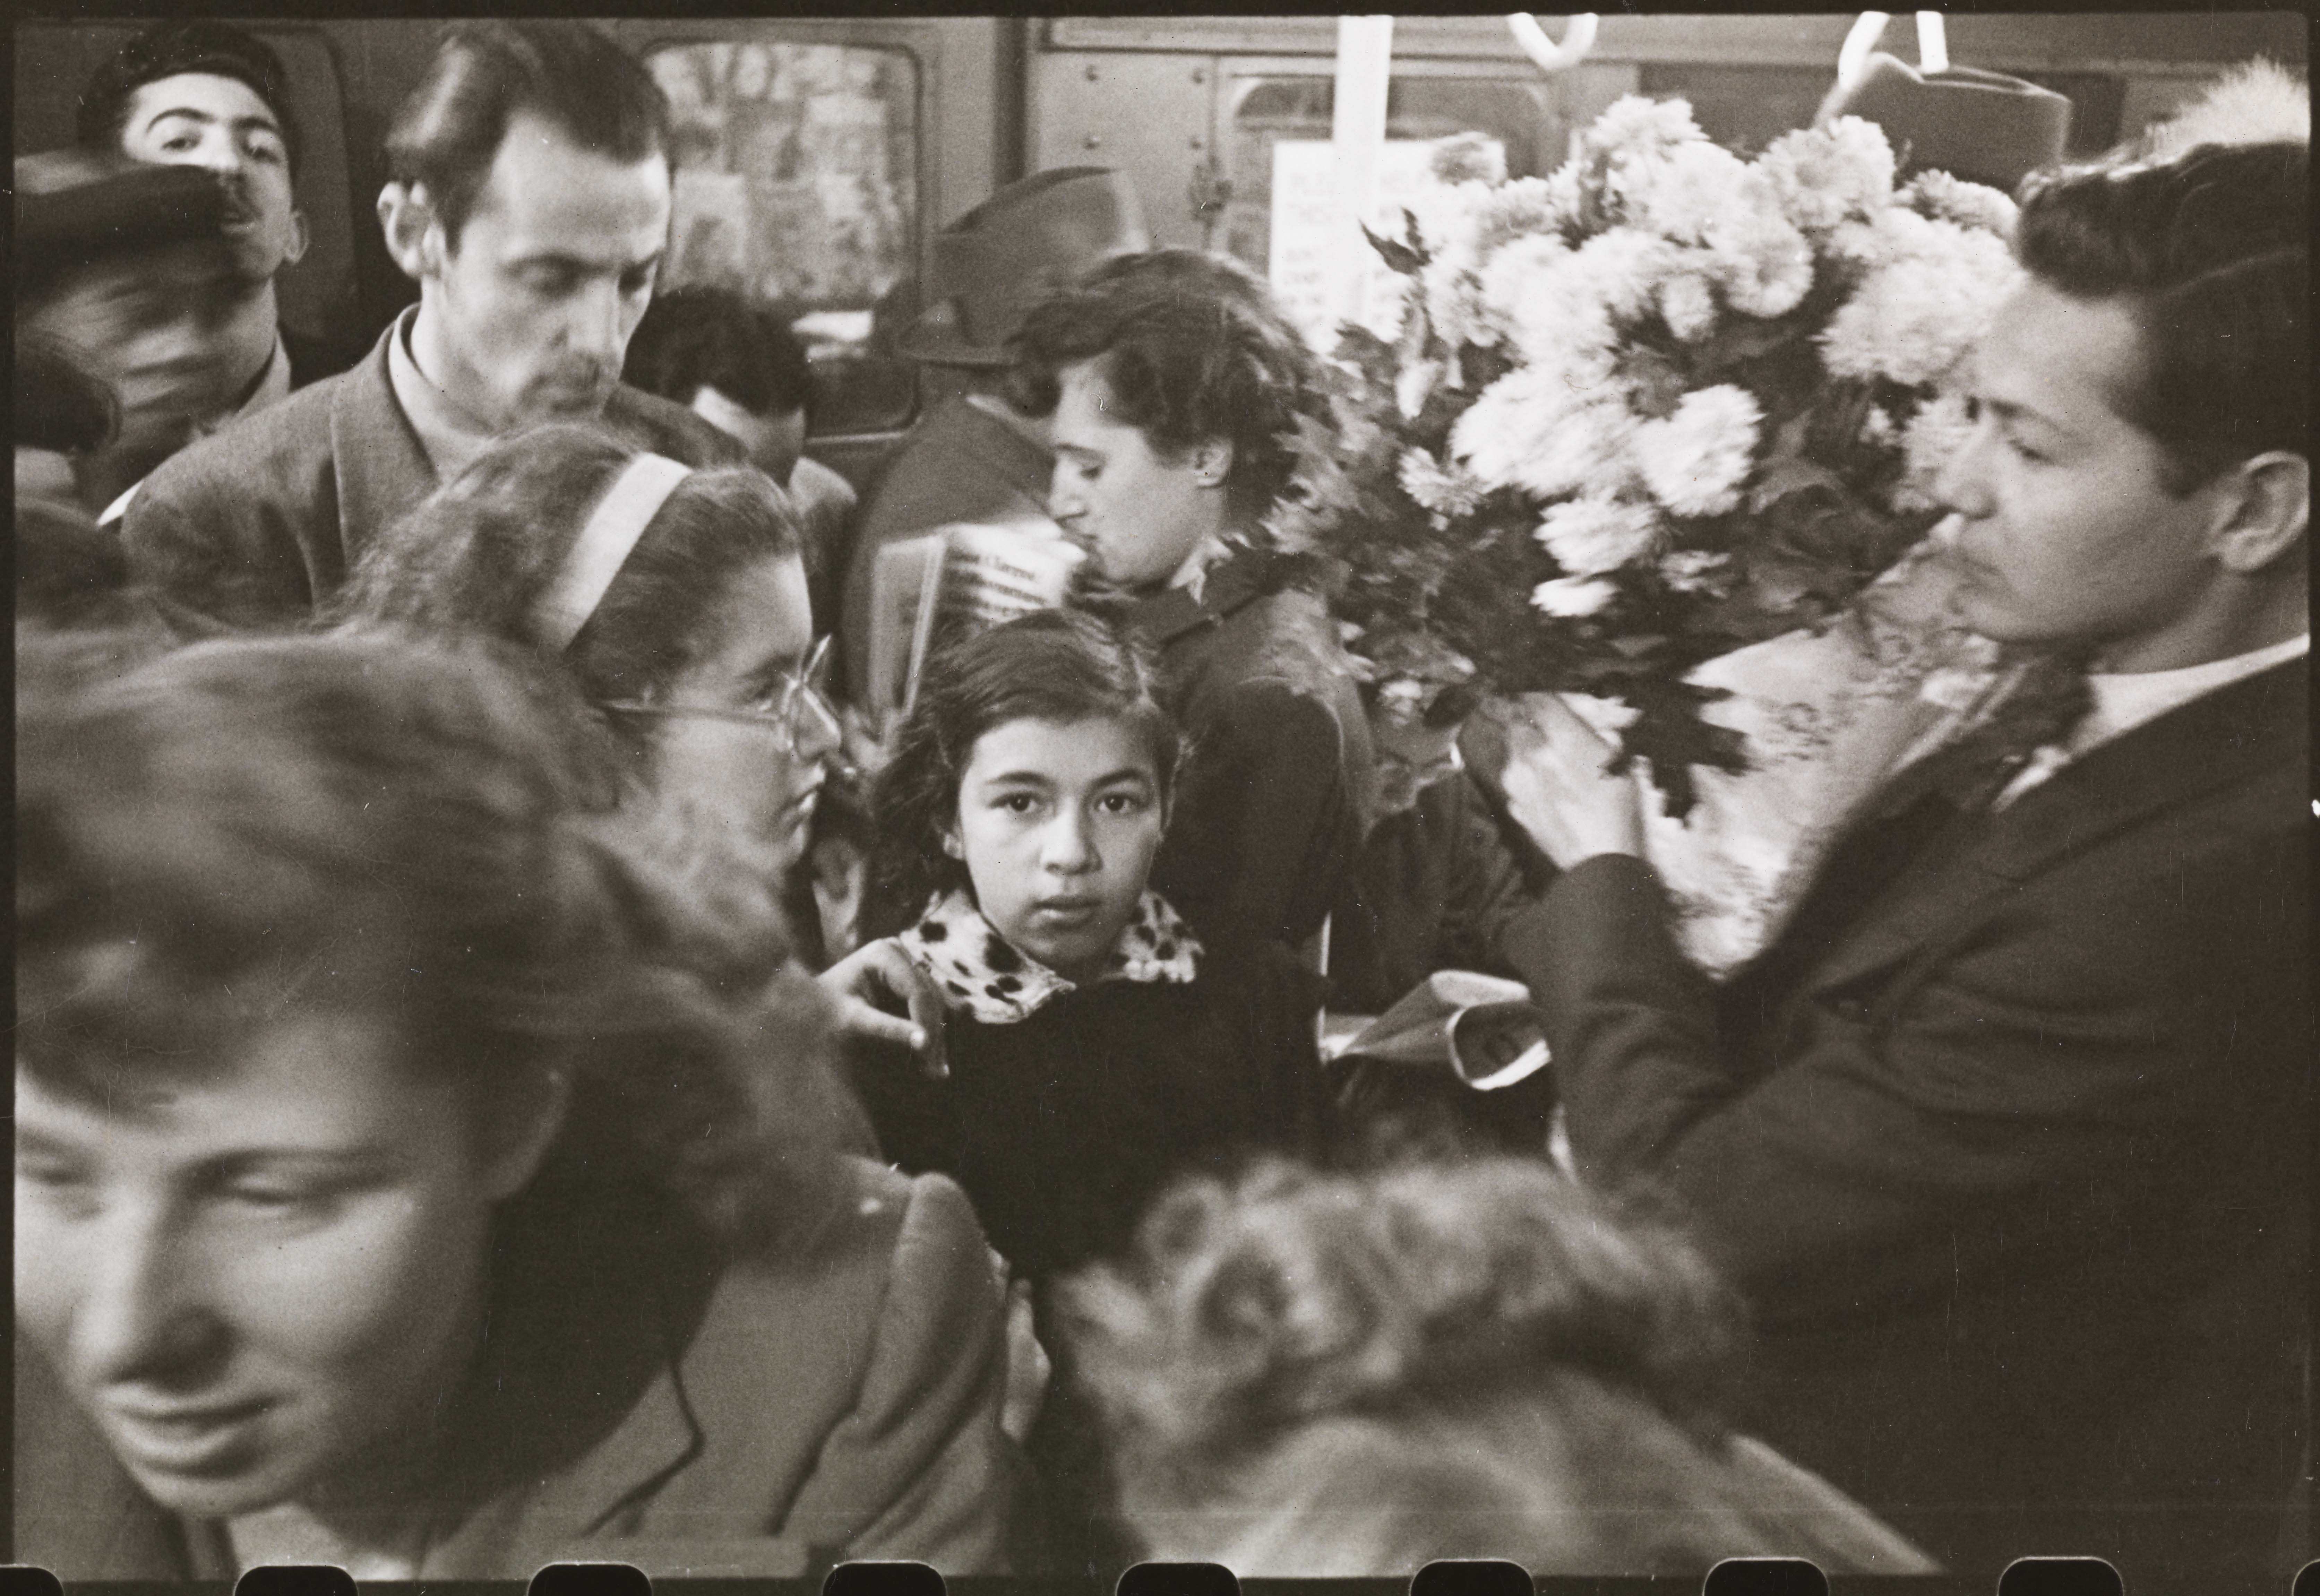 스탠리 큐브릭 뉴욕시 지하철의 삶과 사랑. 붐비는 지하철에 꽃을 들고 남자입니다. 1946. 뉴욕시 박물관. X2011.4.10292.37C